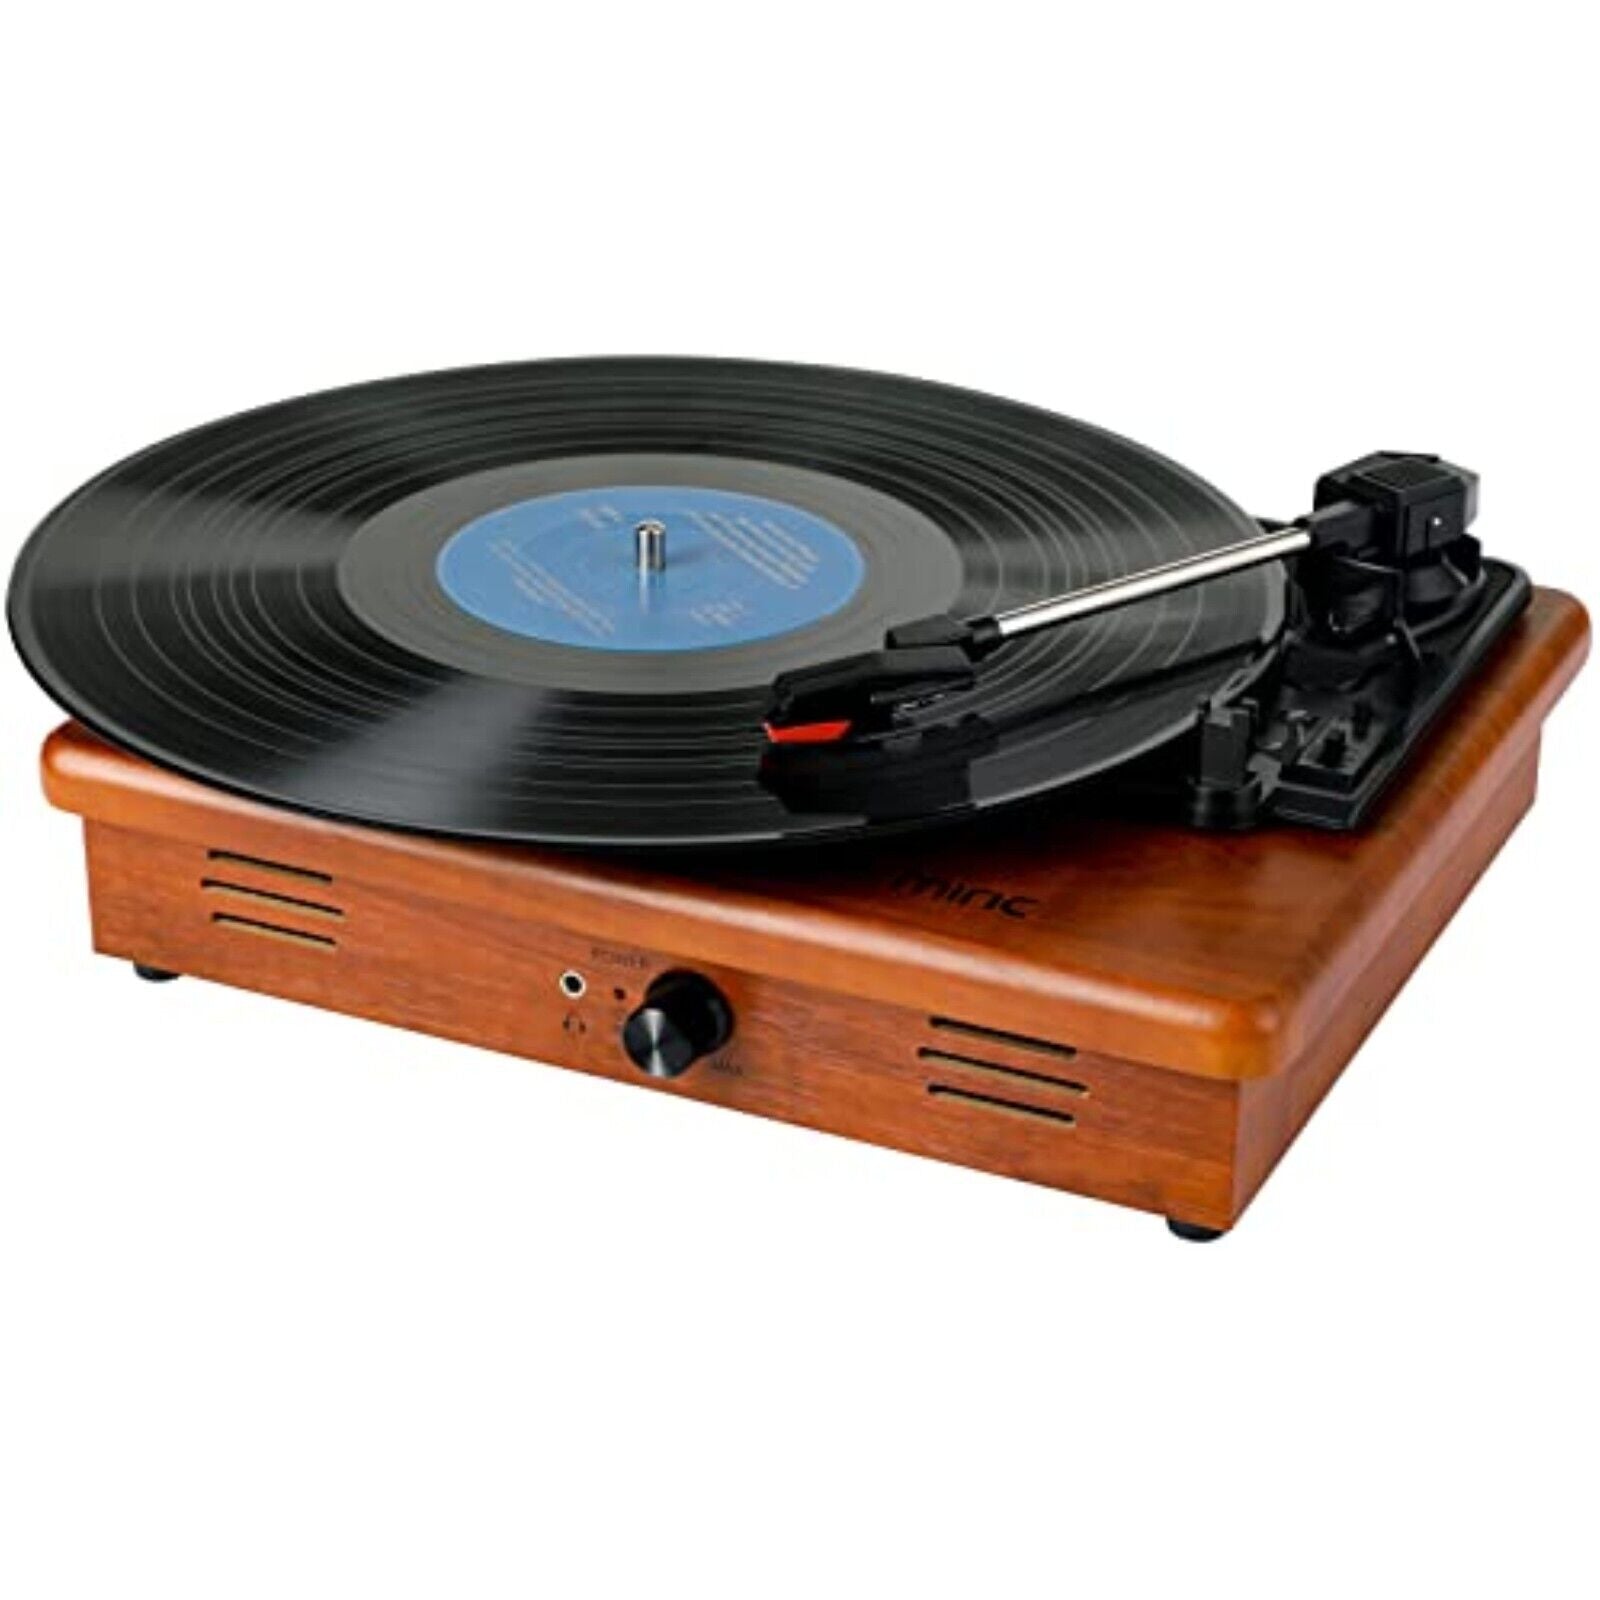 Plattenspieler Nostalgie Holz Musikanlage Kompaktanlage Retro mit USB Bluetooth